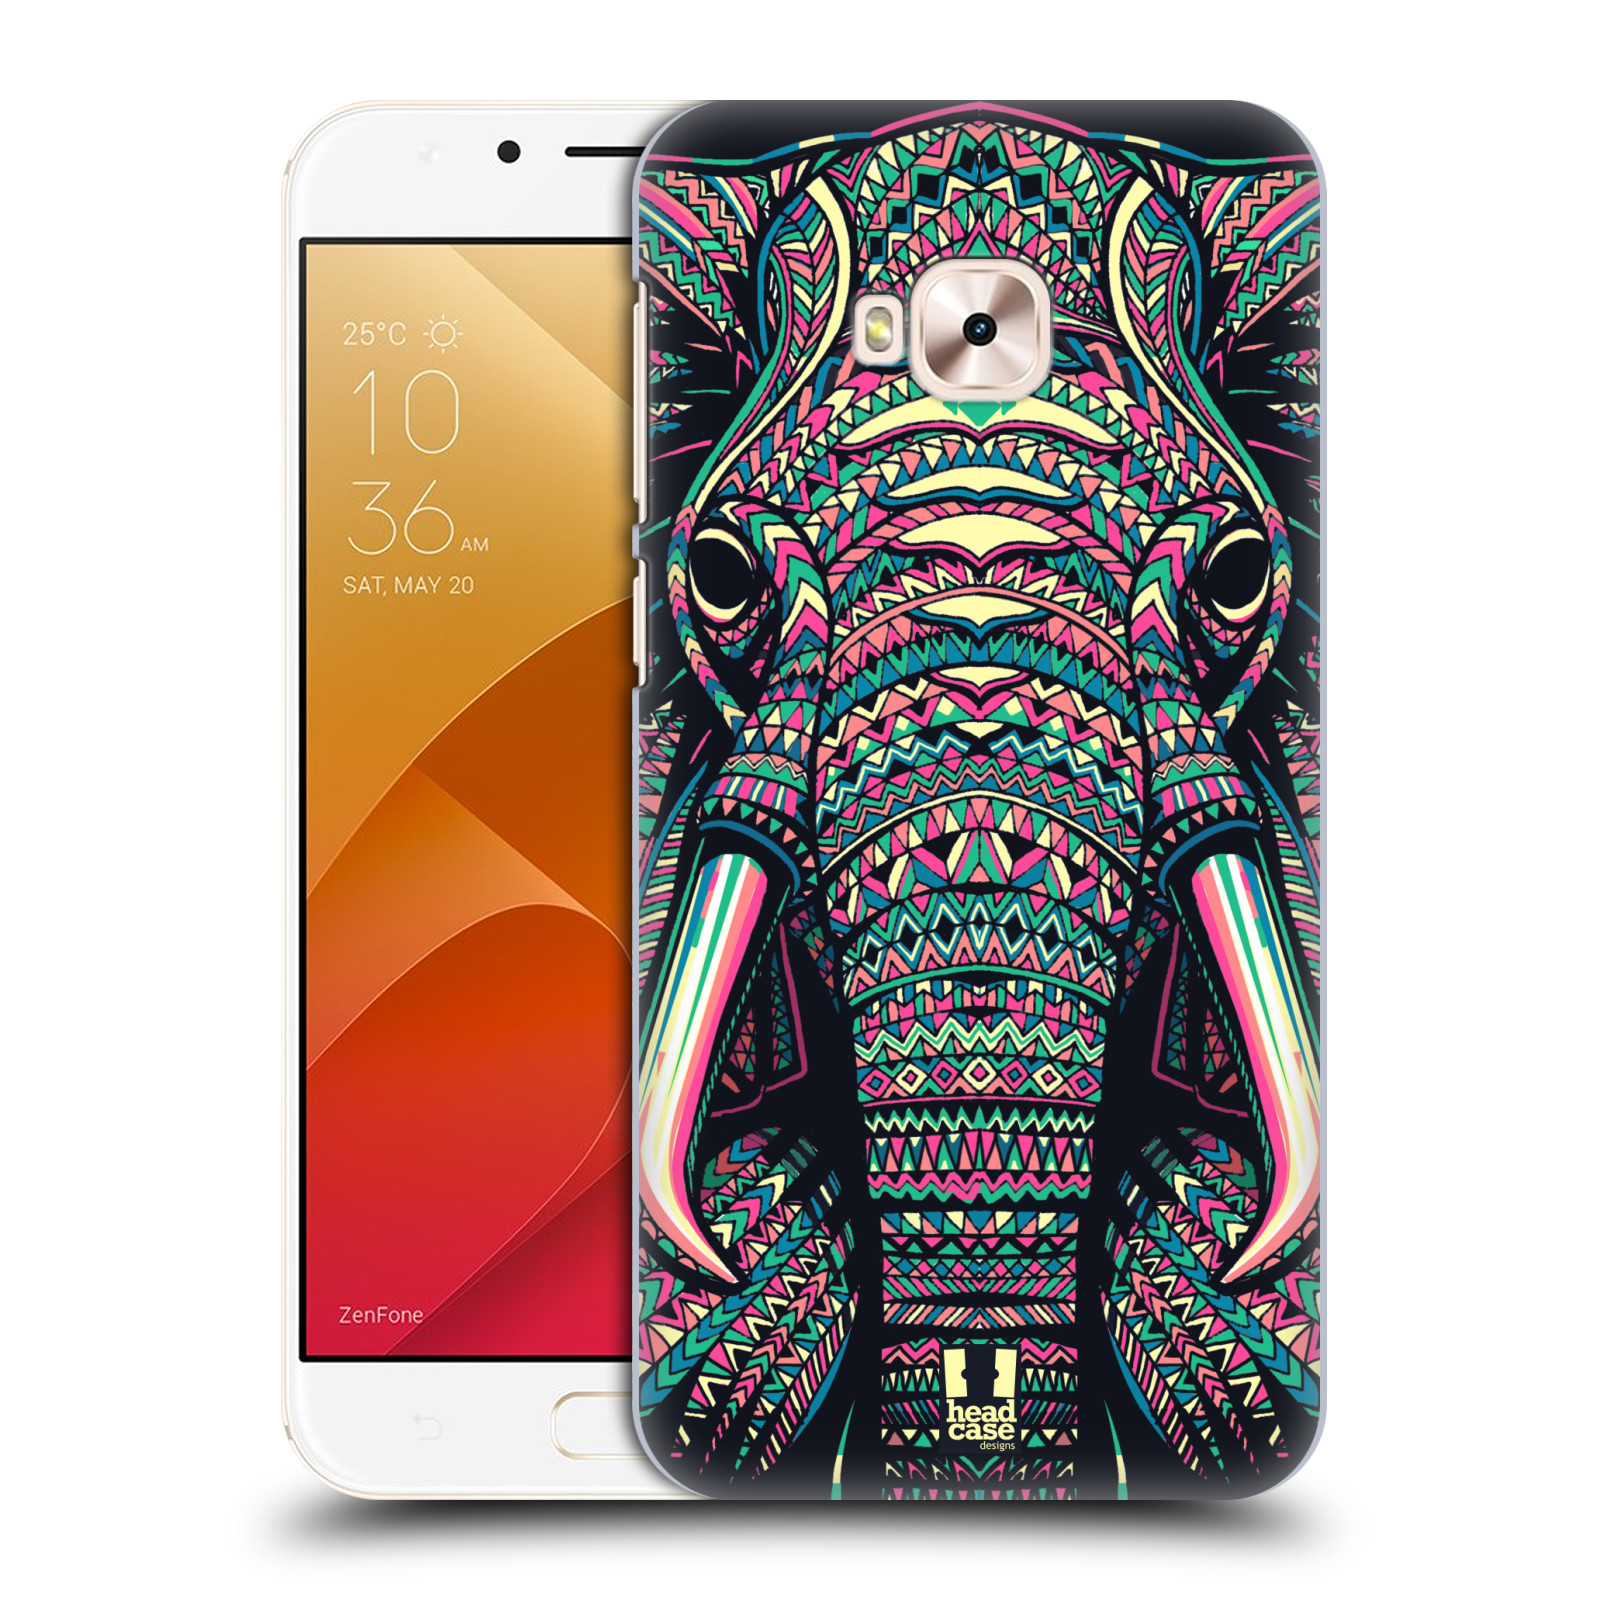 HEAD CASE plastový obal na mobil Asus Zenfone 4 Selfie Pro ZD552KL vzor Aztécký motiv zvíře 2 slon